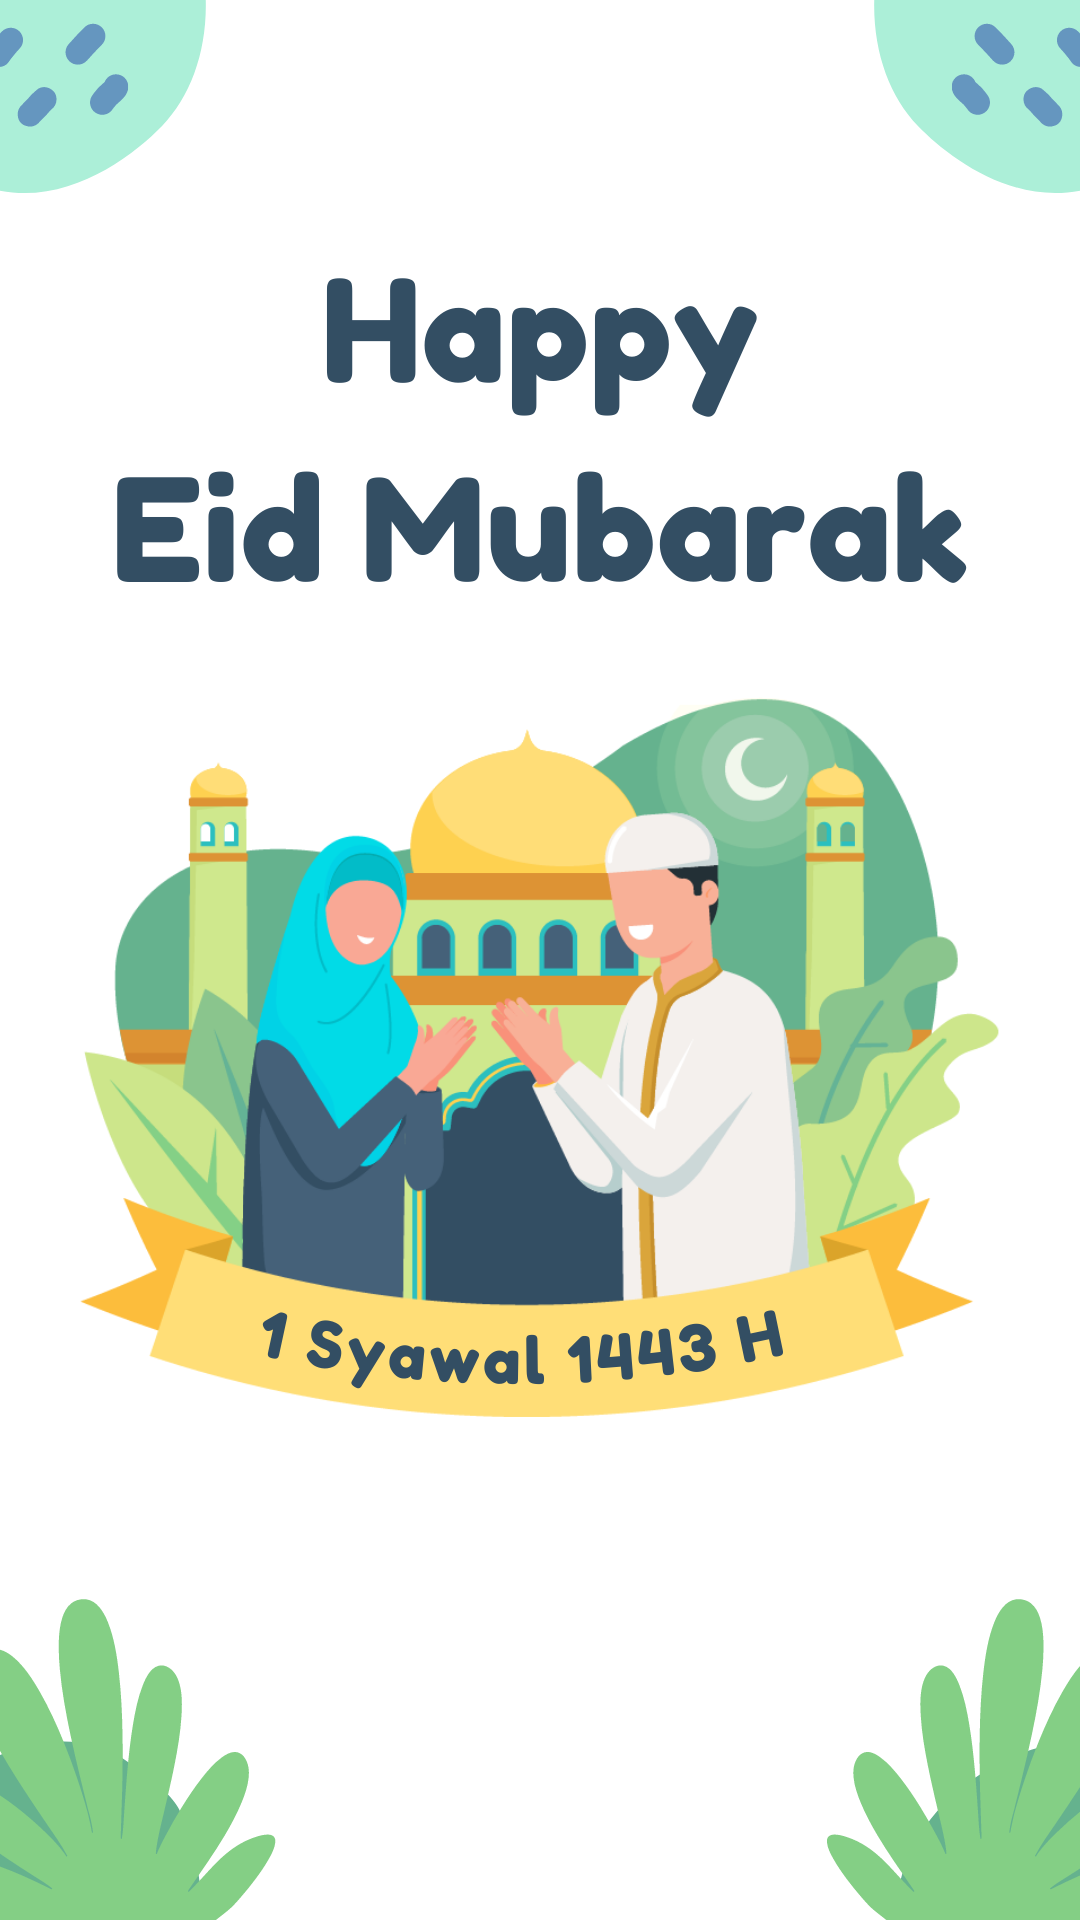 Amazing Eid mubarak instagram story images